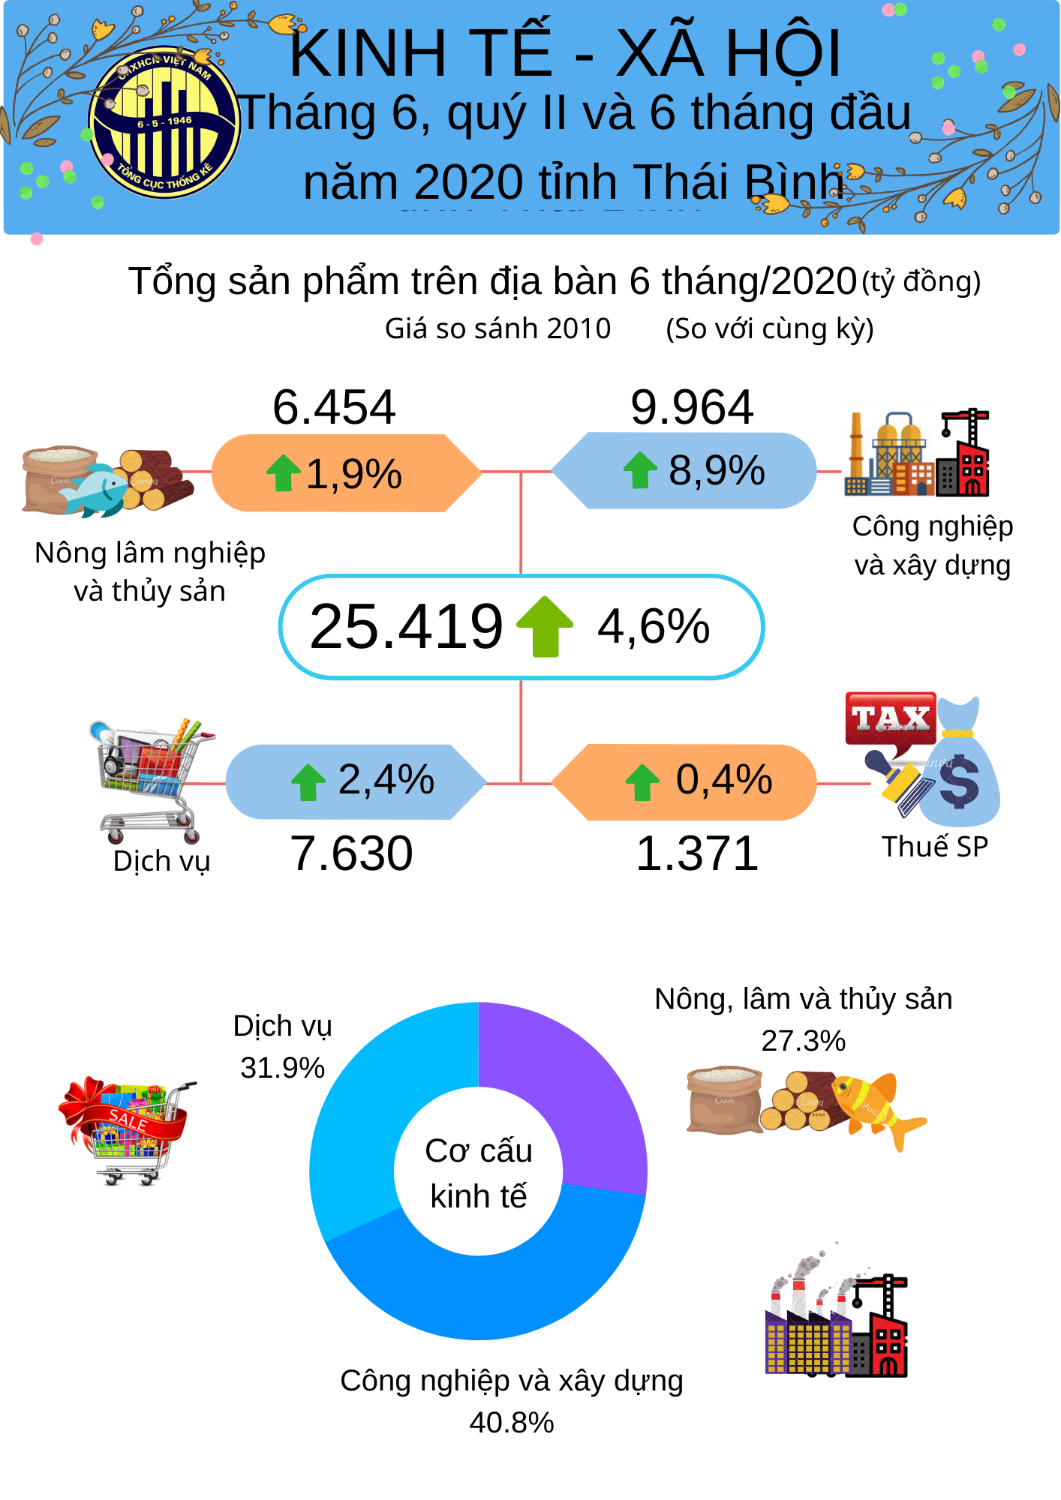 Tình hình kinh tế - xã hội  6 tháng đầu năm 2020 tỉnh Thái Bình